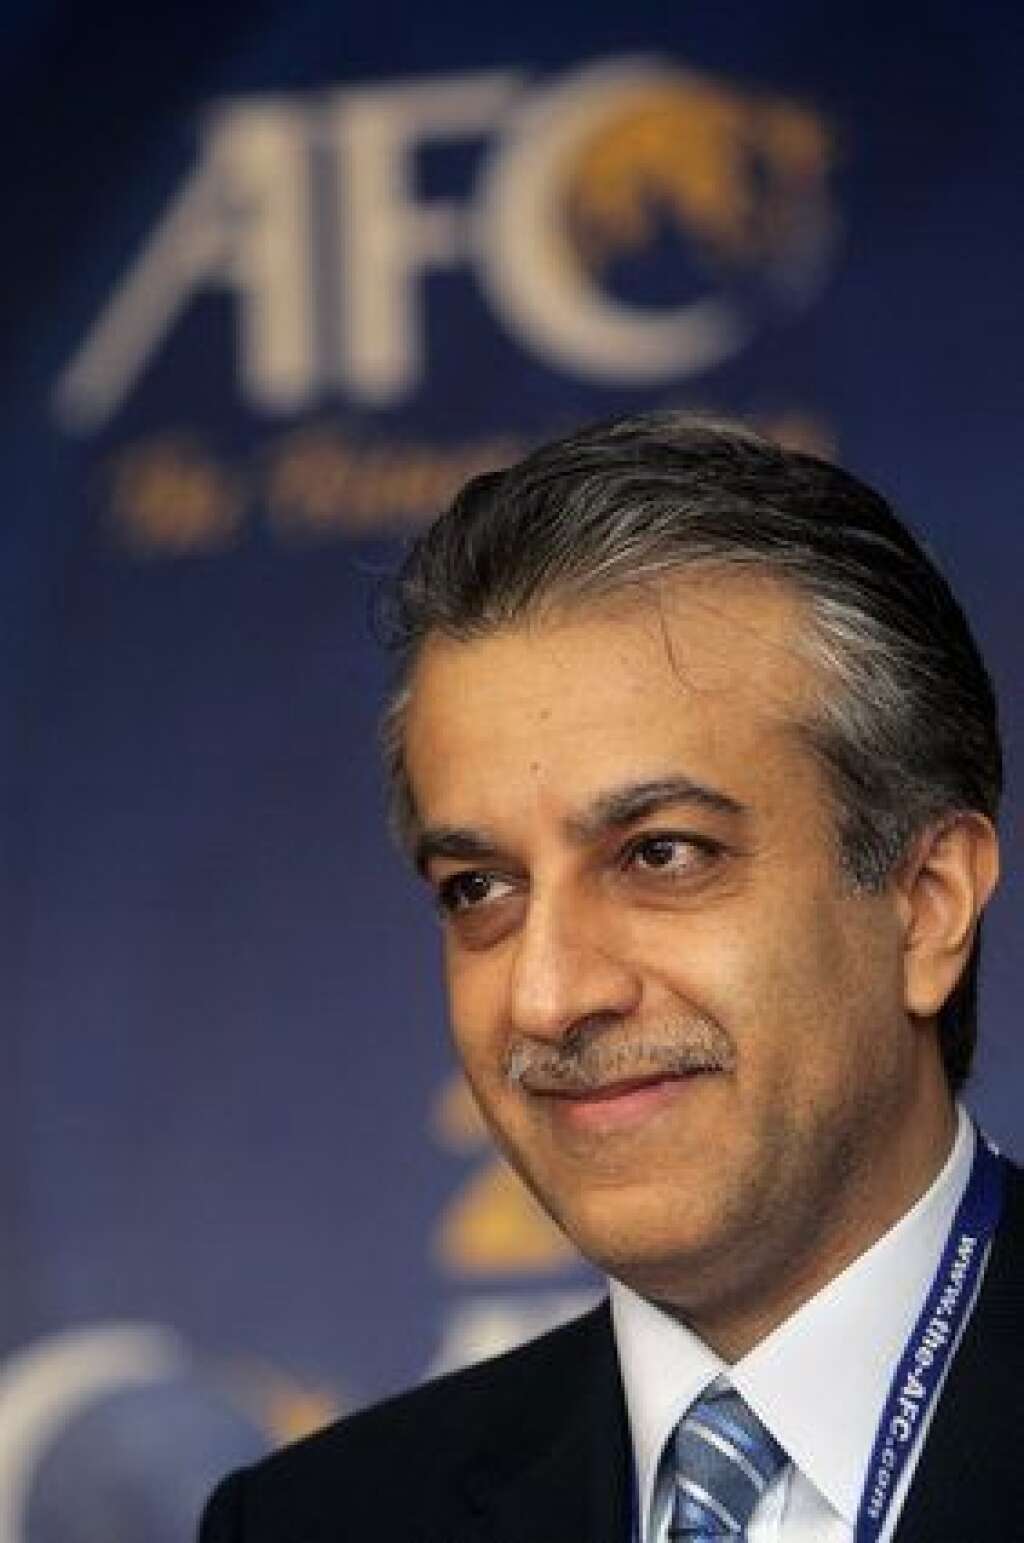 Cheikh Ali Salman, patron du foot asiatique - Cheikh Salman, membre de la famille royale du Bahrein, est le président de la Confédération asiatique de football (AFC) depuis 2013, il connaît bien la Fifa pour en occuper l'un des postes de vice-président.   Agé de 49 ans, il avait auparavant soutenu Platini. Pourrait-il bénéficier du soutien de l'UEFA en cas d'empêchement de Platini? Le Bahreini traîne en tout cas de gros boulets: il fait l'objet de vives critiques de la part d'organisations de défense des Droits de l'Homme pour son rôle dans la répression du soulèvement démocratique de 2011, ce qui pourrait refroidir nombre de fédérations européennes.